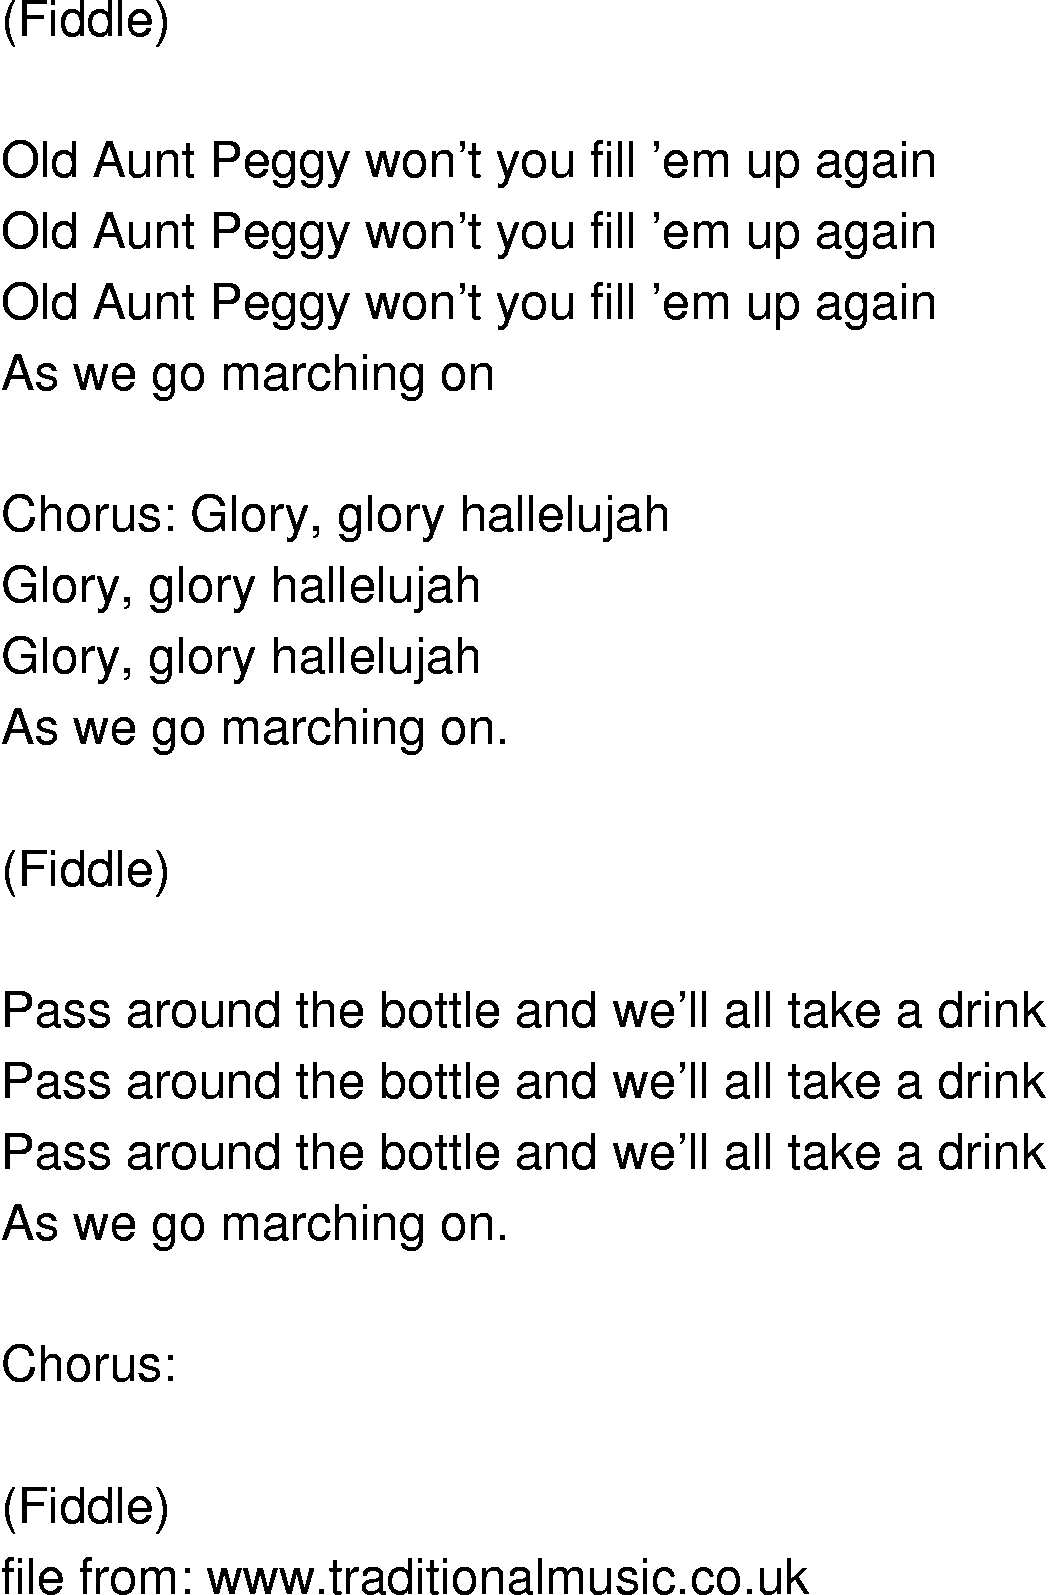 Old-Time (oldtimey) Song Lyrics - old aunt peggy wont you set em up again